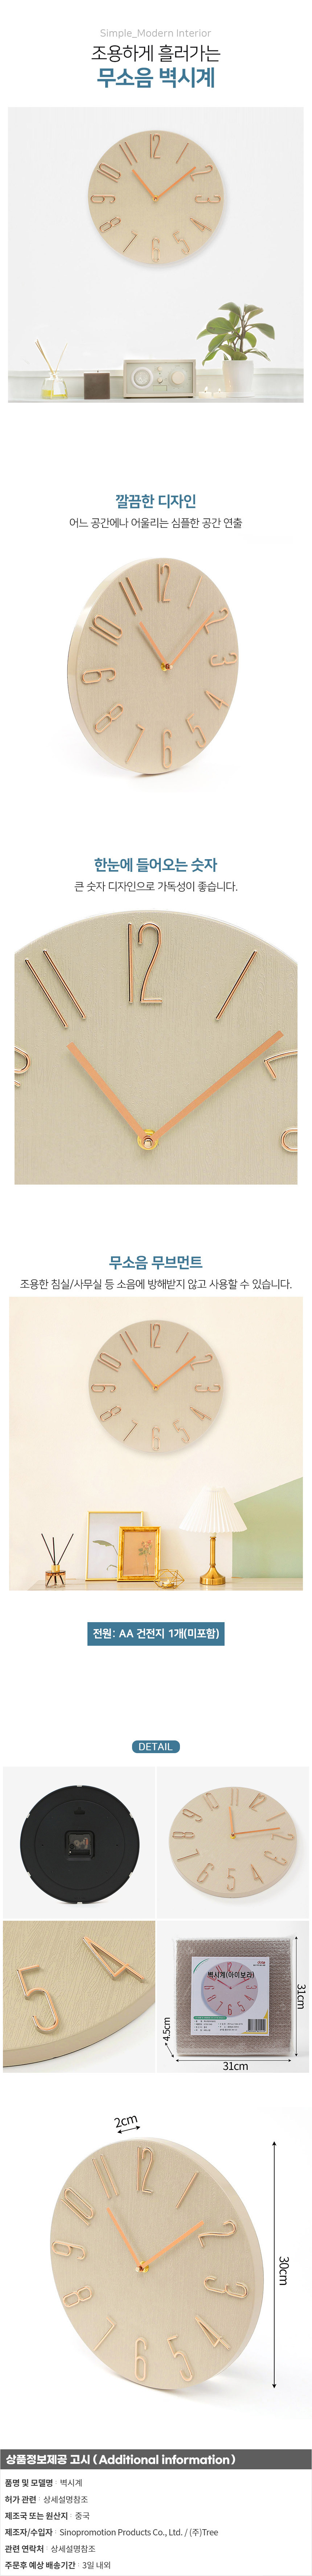 원형 벽시계 30cm 카페 호프 로고 인쇄 벽걸이 시계